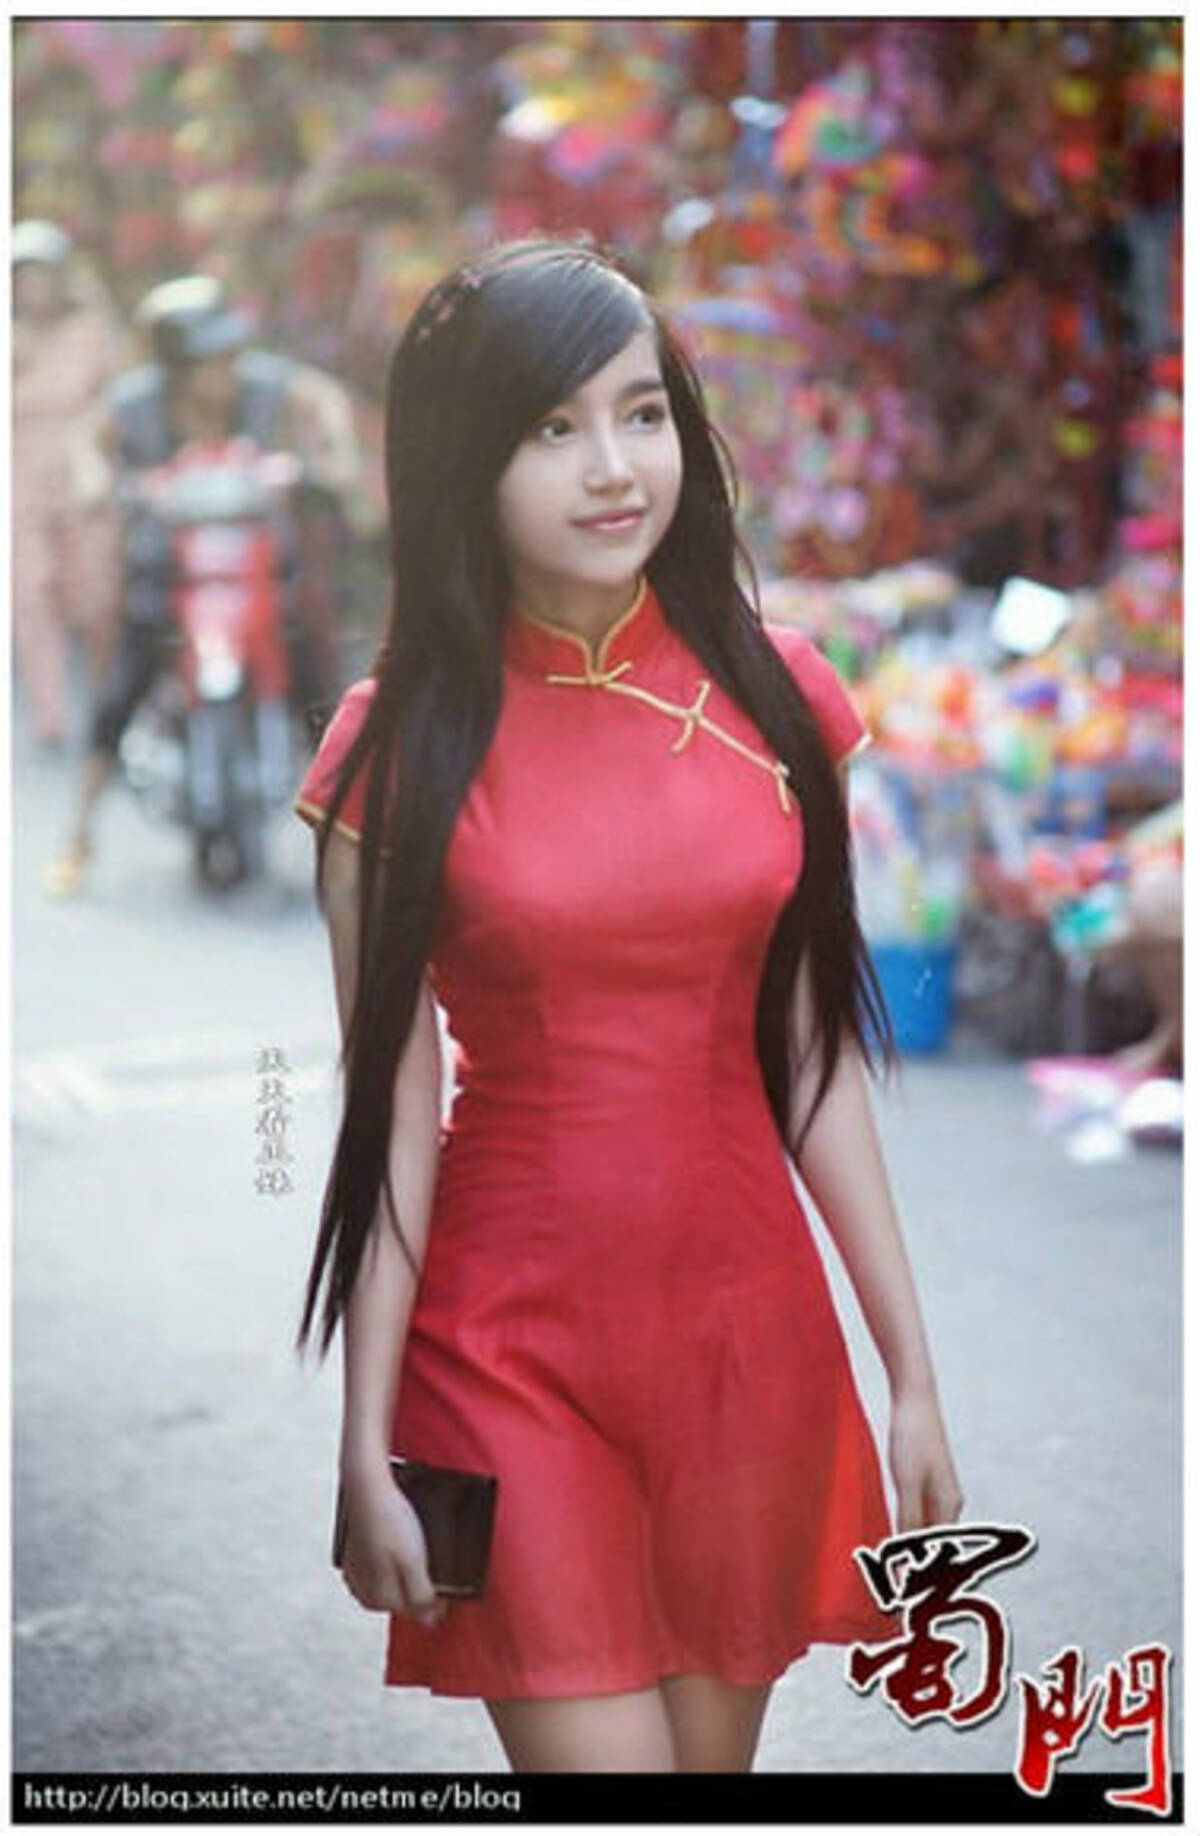 世界美少女探訪 けしからんほど清純派 ベトナムの天使エリー トラン ハちゃん 11年10月1日 エキサイトニュース